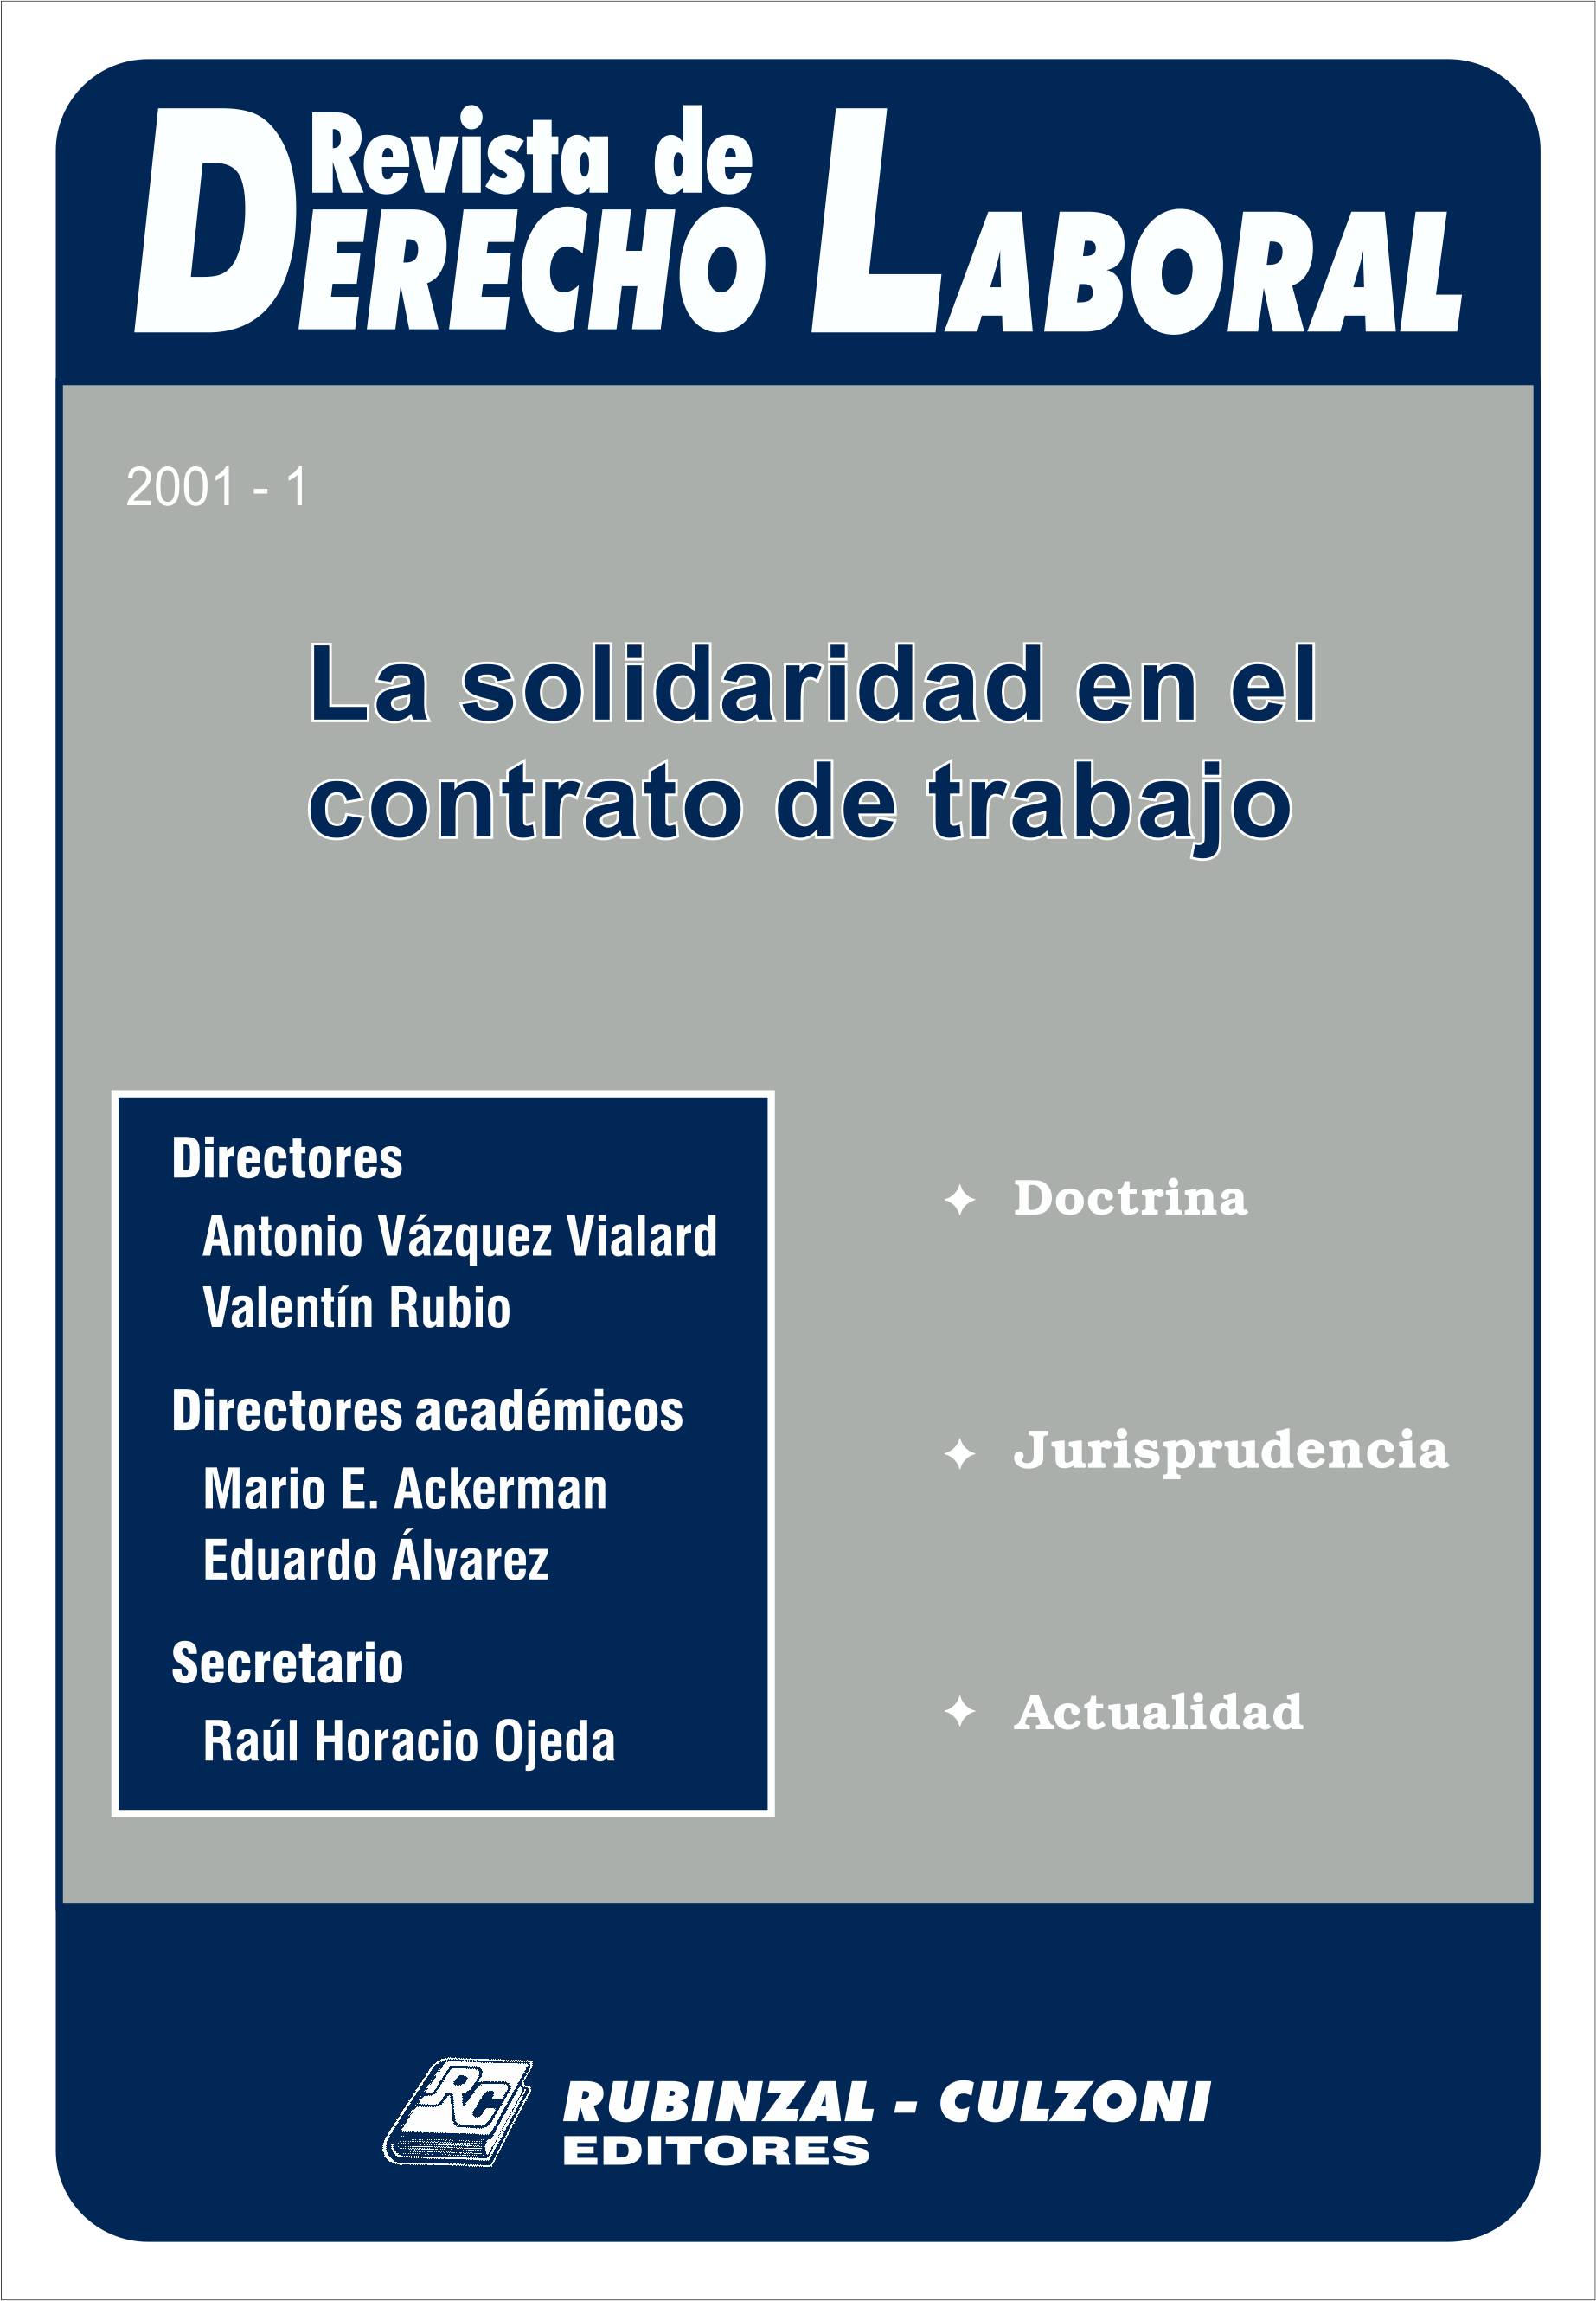 Revista de Derecho Laboral - La solidaridad en el contrato de trabajo